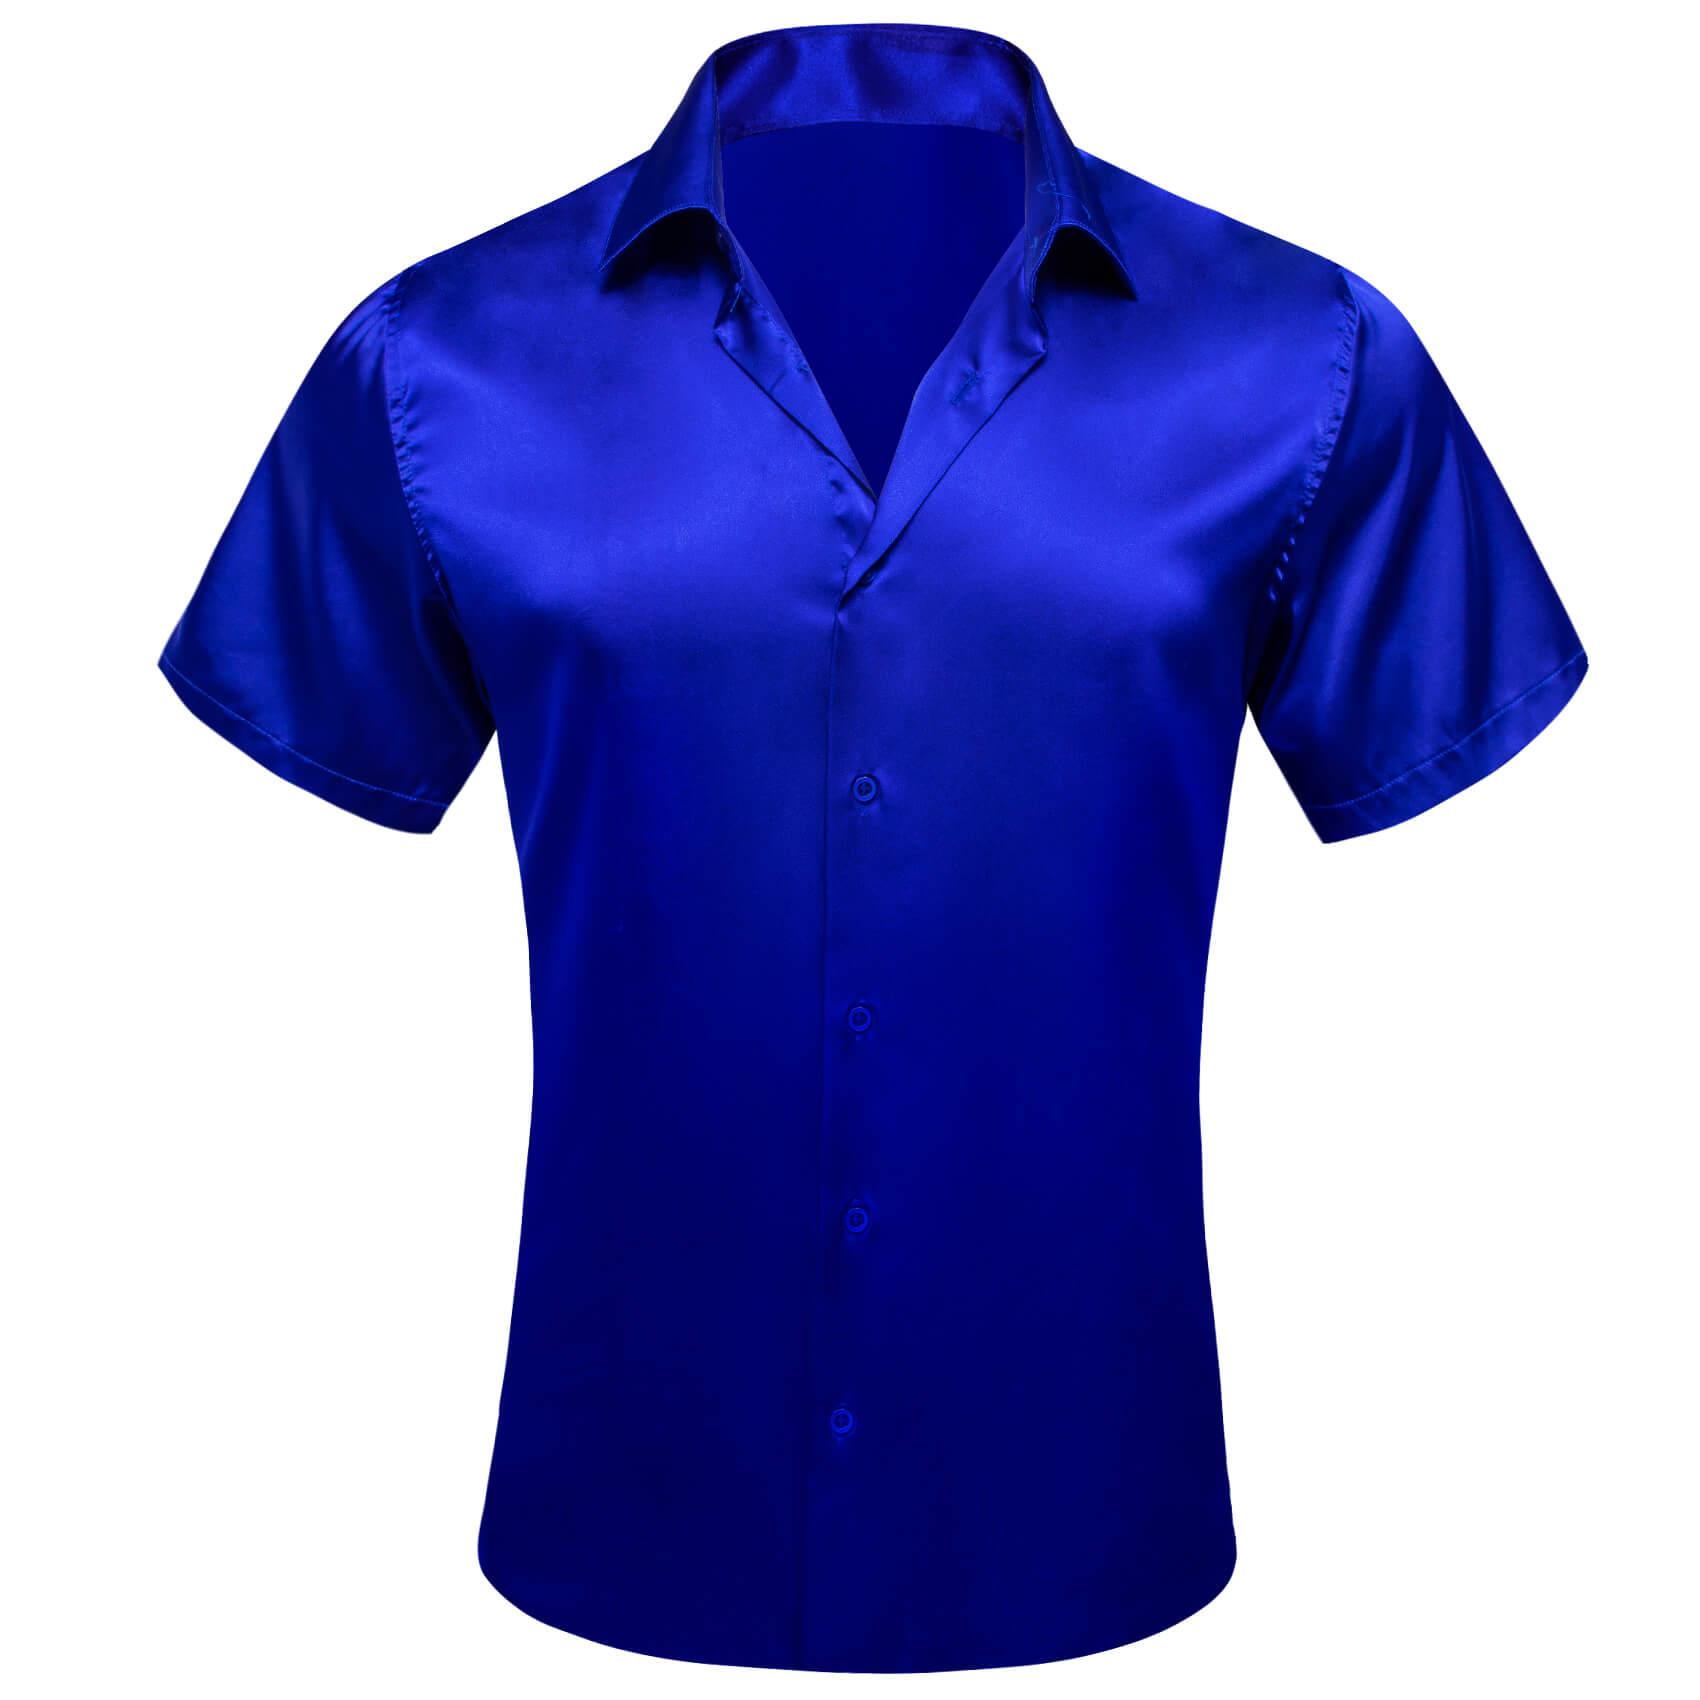 Barry Wang Short Sleeve Shirt Solid Blue Shirt